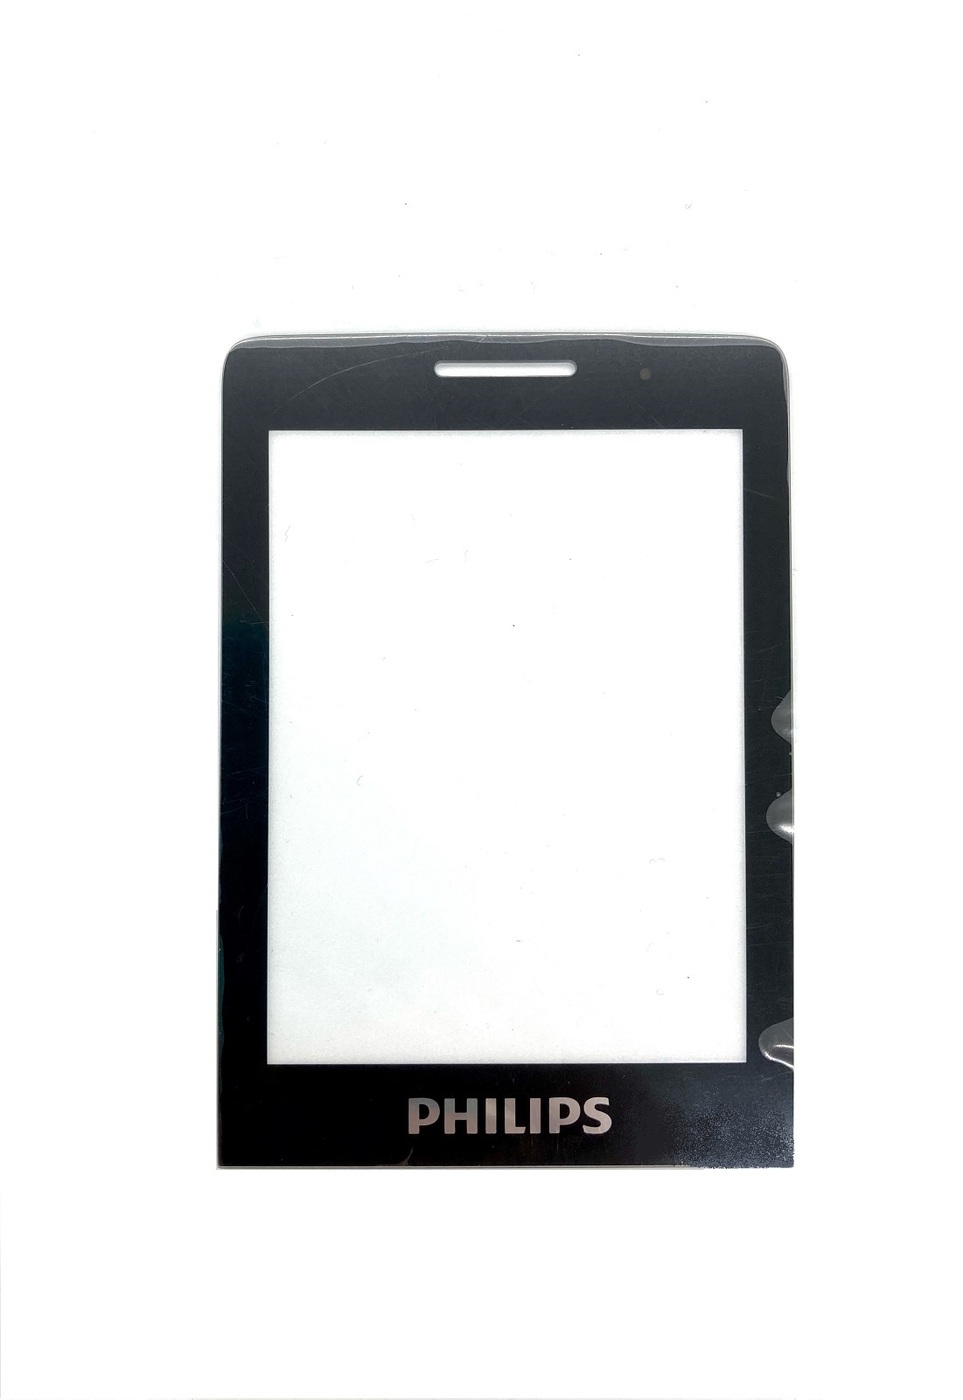 Стекло филипс. Philips Xenium e570 стекло. Филипс е560. Филипс e570 корпус. Стекло для Philips Xenium e590.